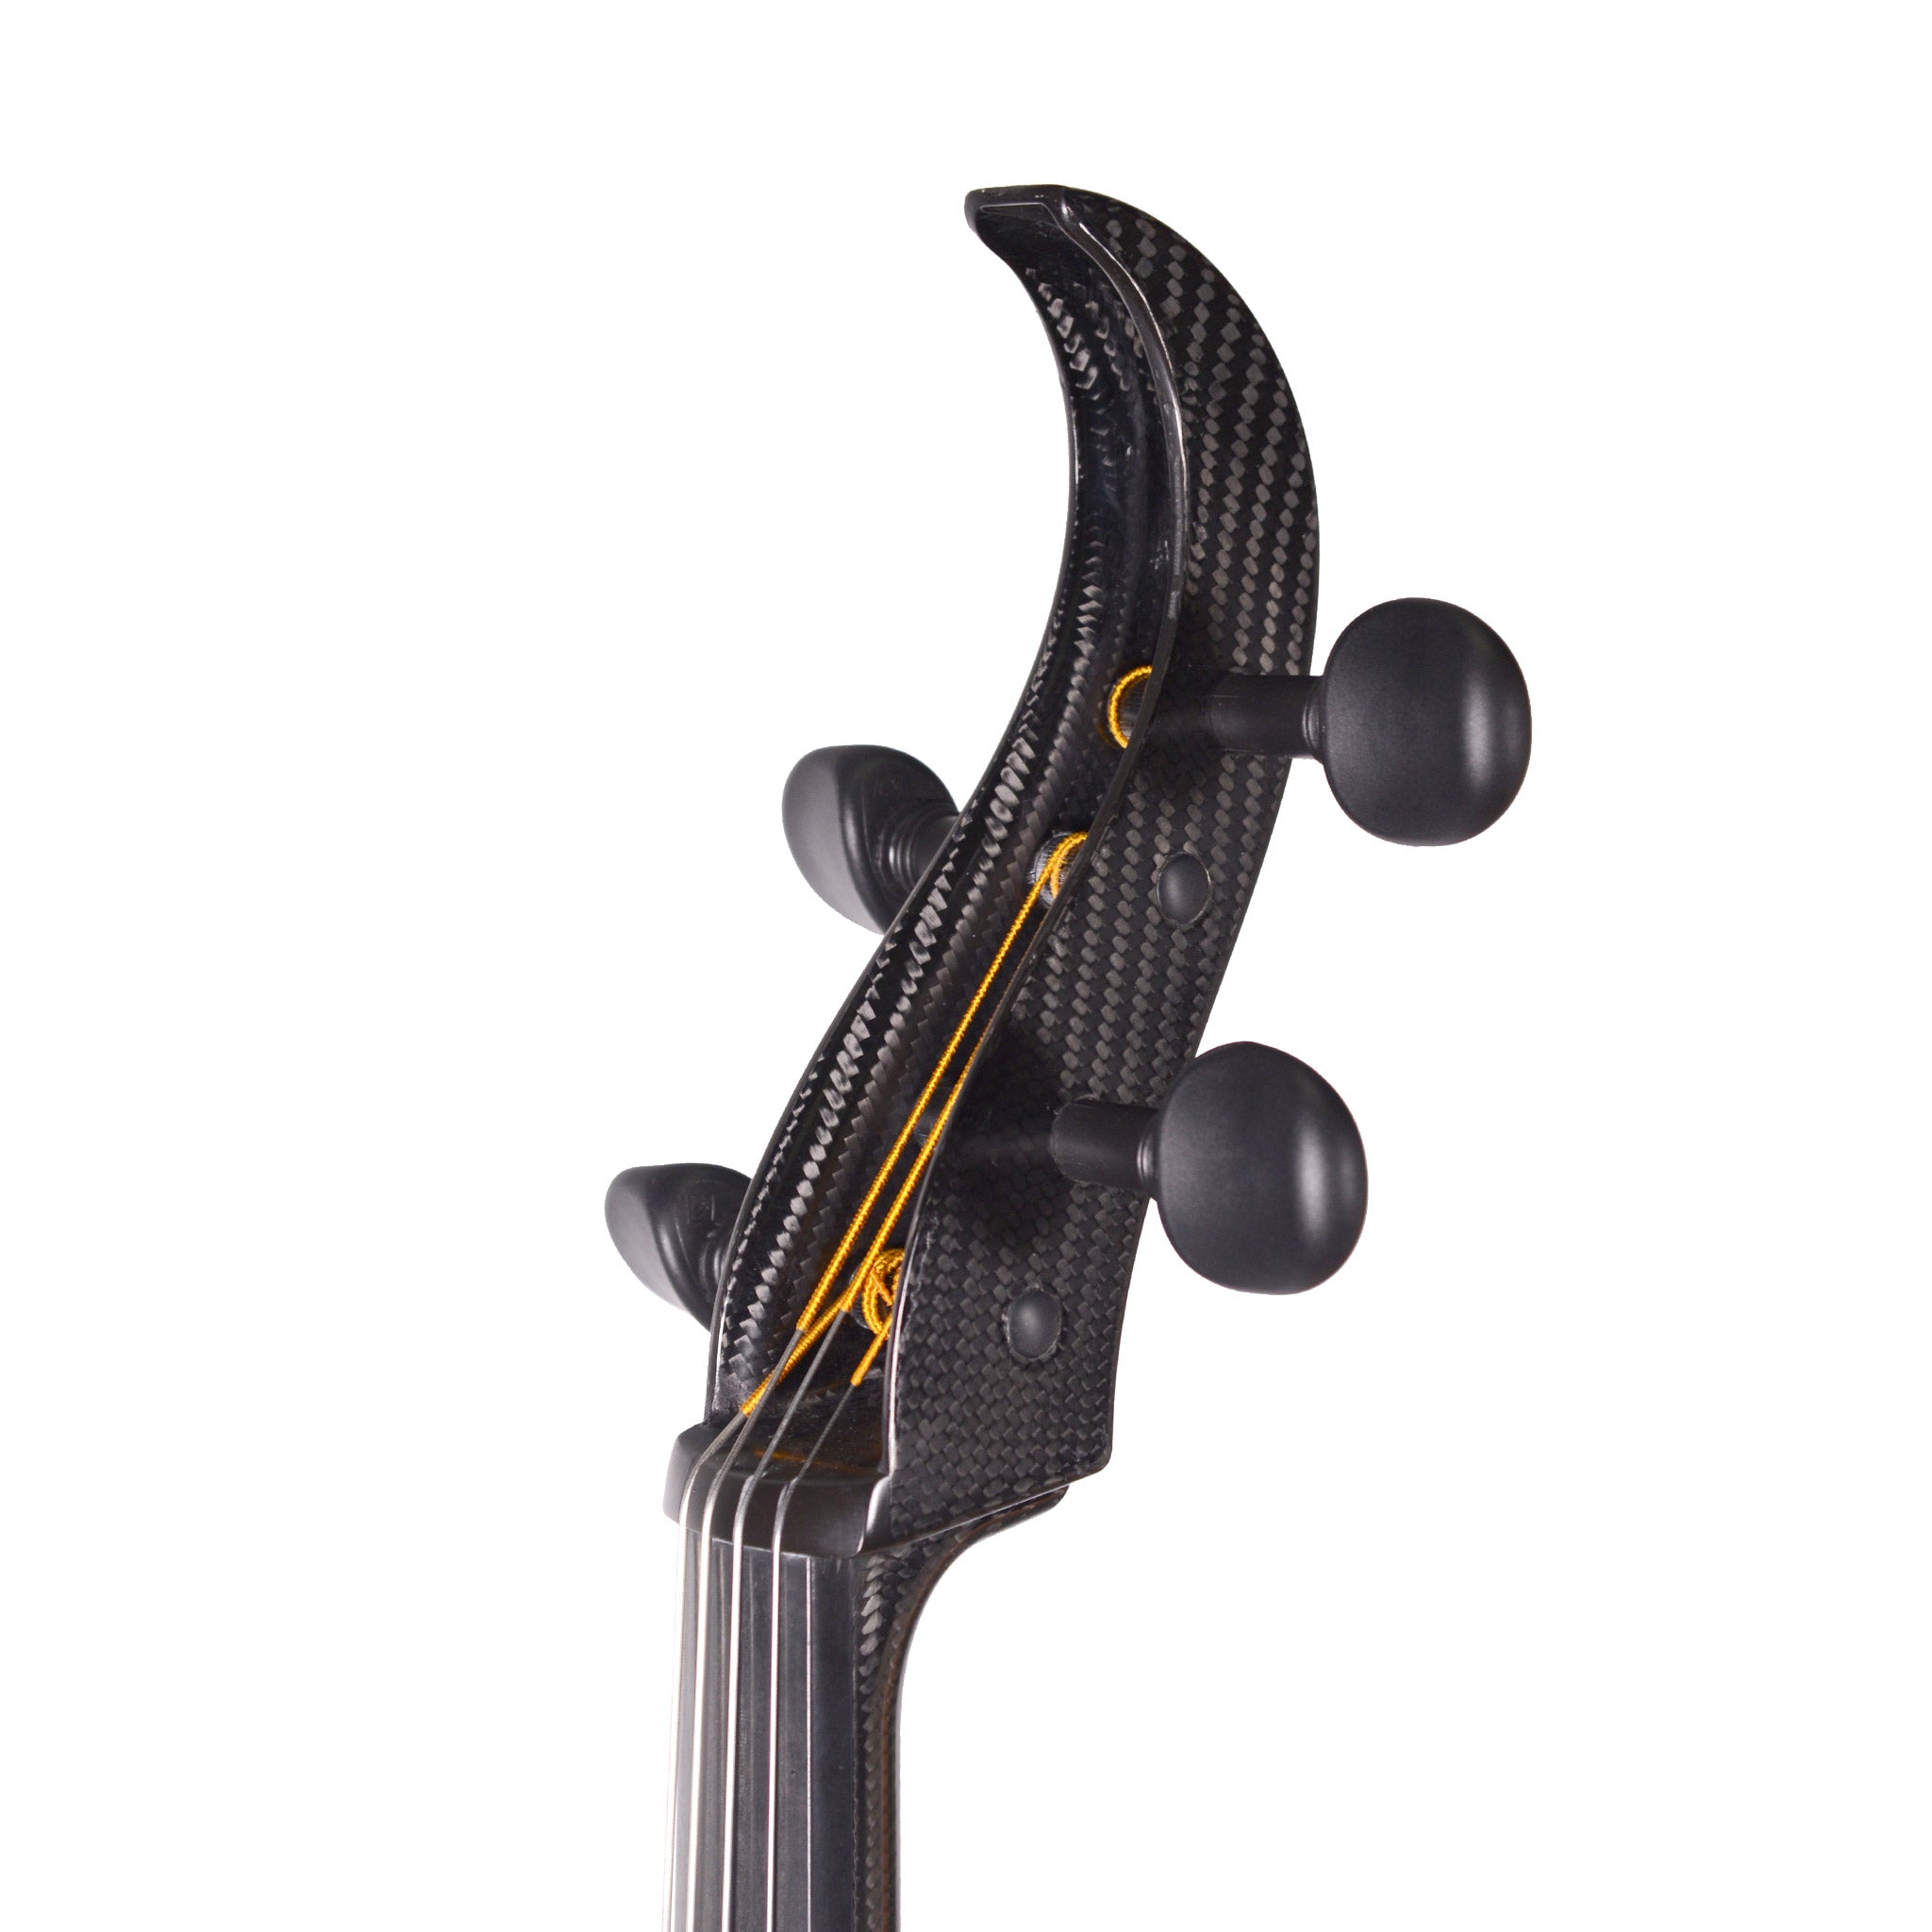 B-Stock Mezzo-Forte Carbon Fiber Evo Line Cello